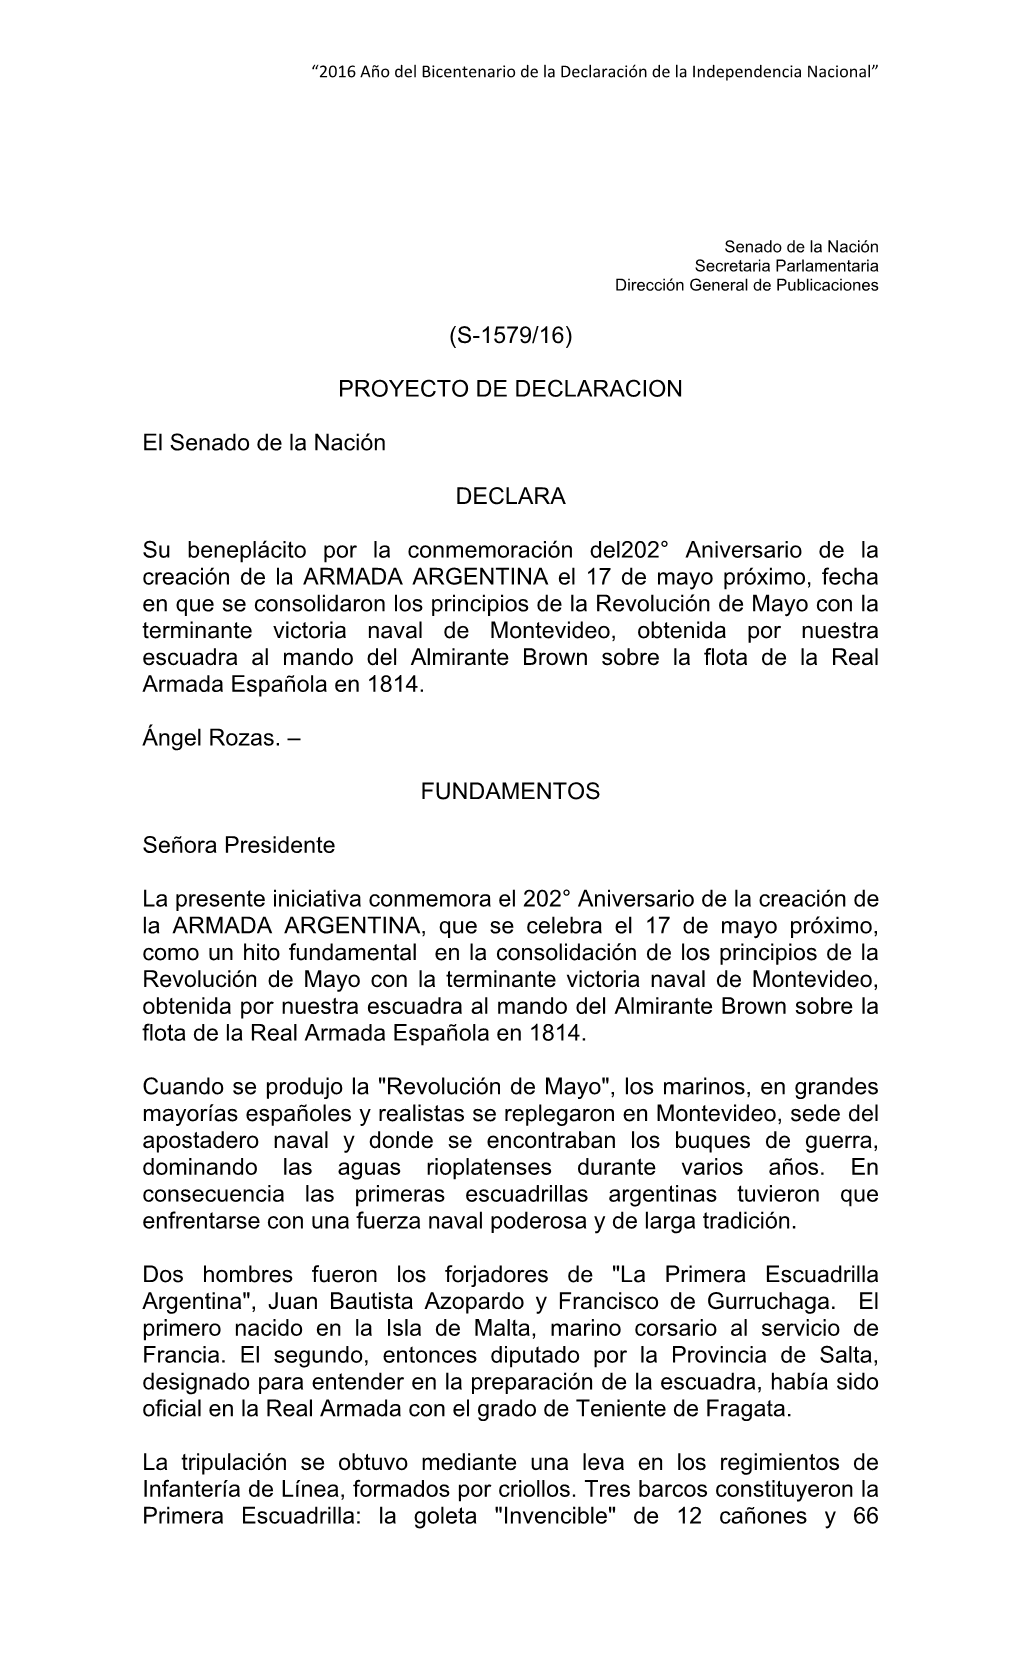 (S-1579/16) PROYECTO DE DECLARACION El Senado De La